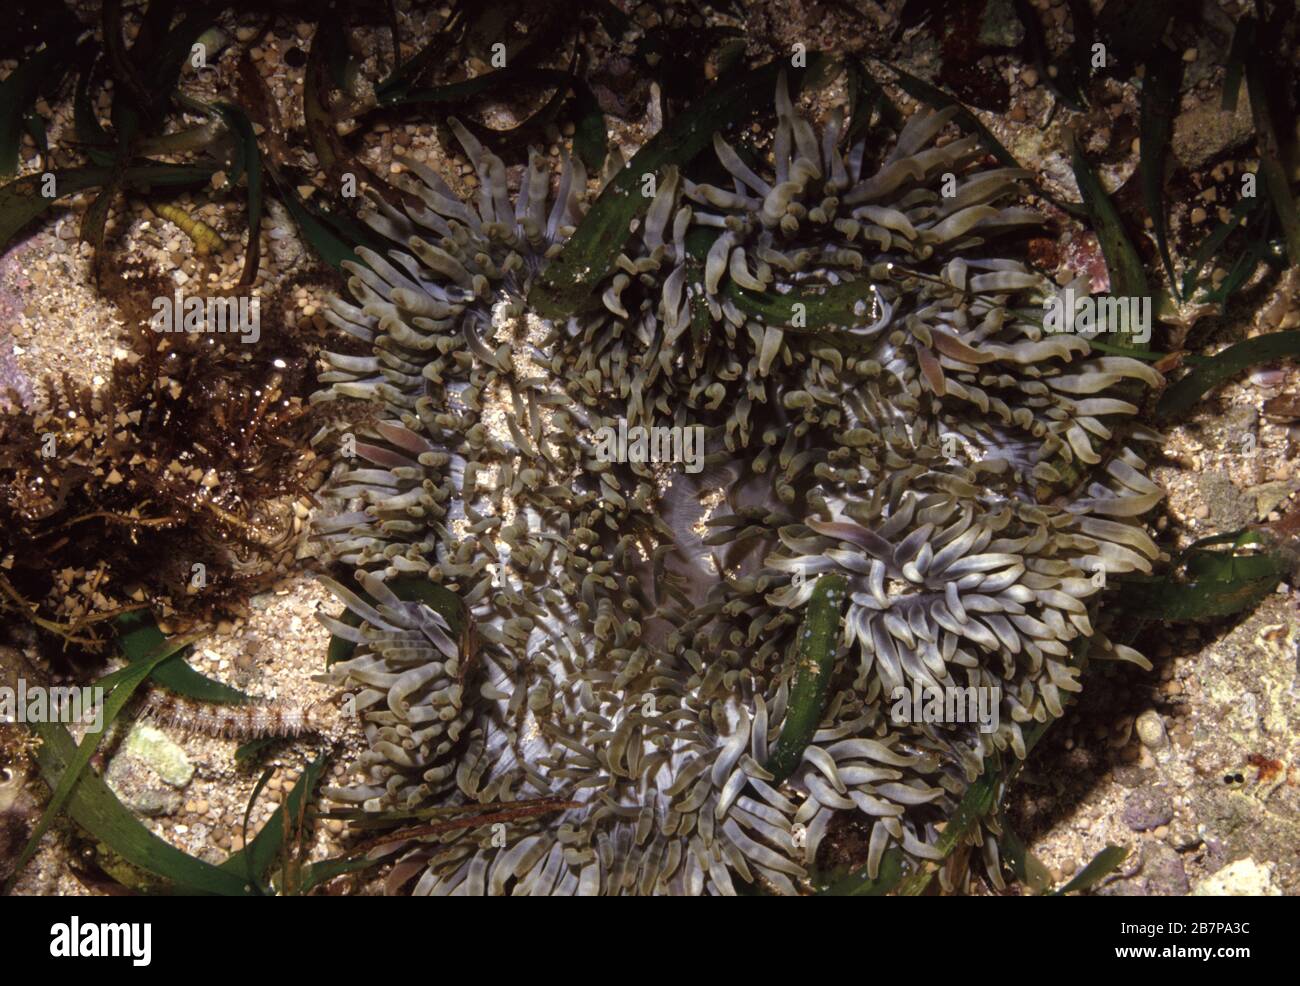 Sebae anemone, Heteractis crispa Stock Photo